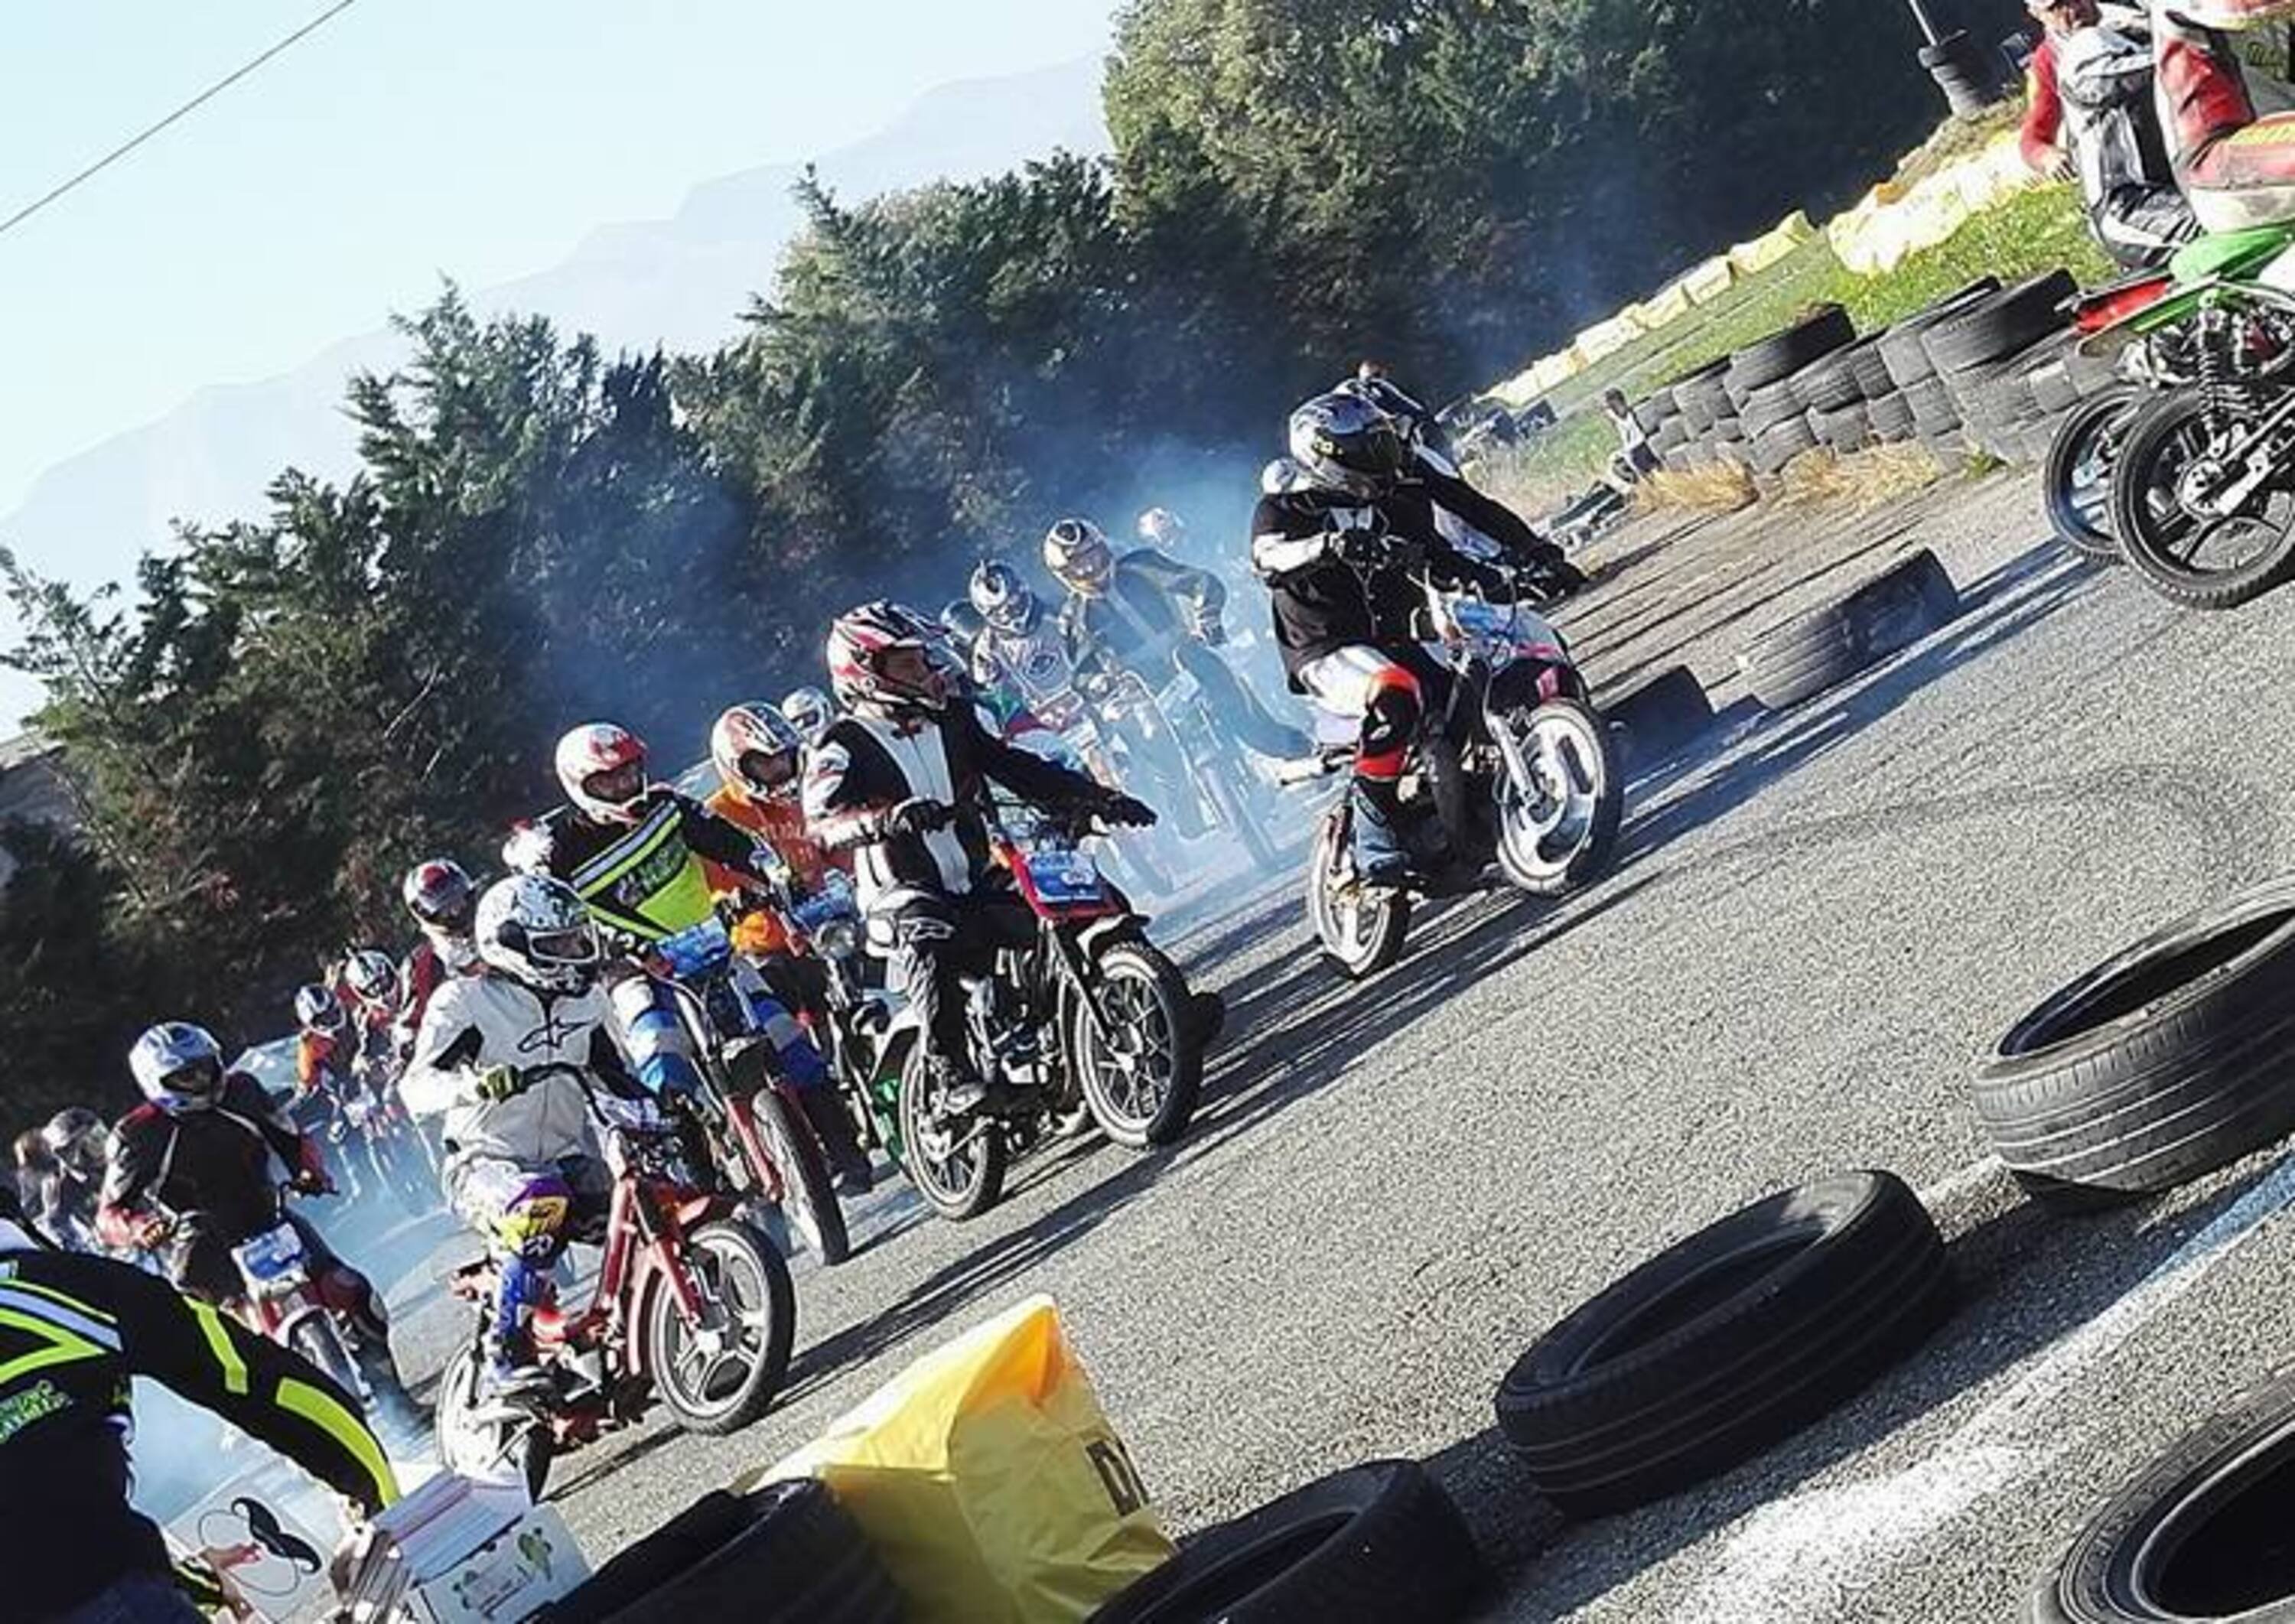 Campionato Nazionale Moped 2017 al via